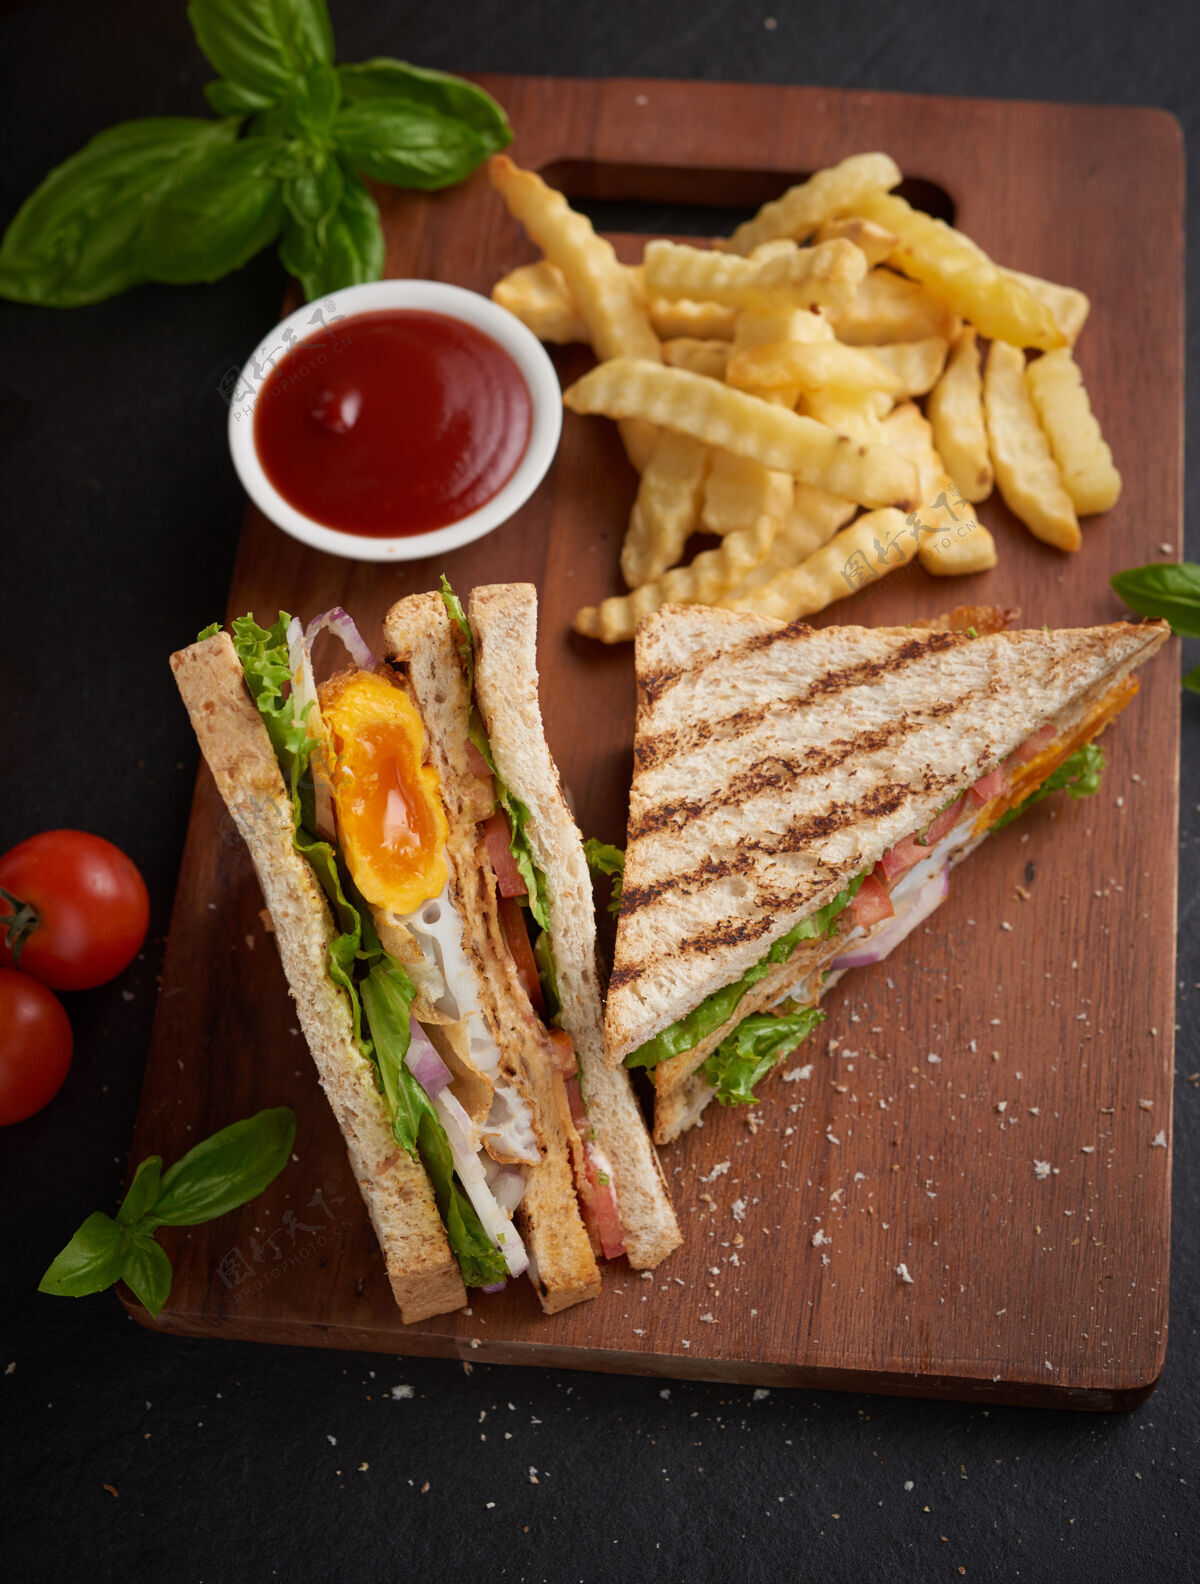 午餐烤制三明治 配培根 煎蛋 西红柿和生菜 放在木制砧板上鸡蛋脂肪蔬菜